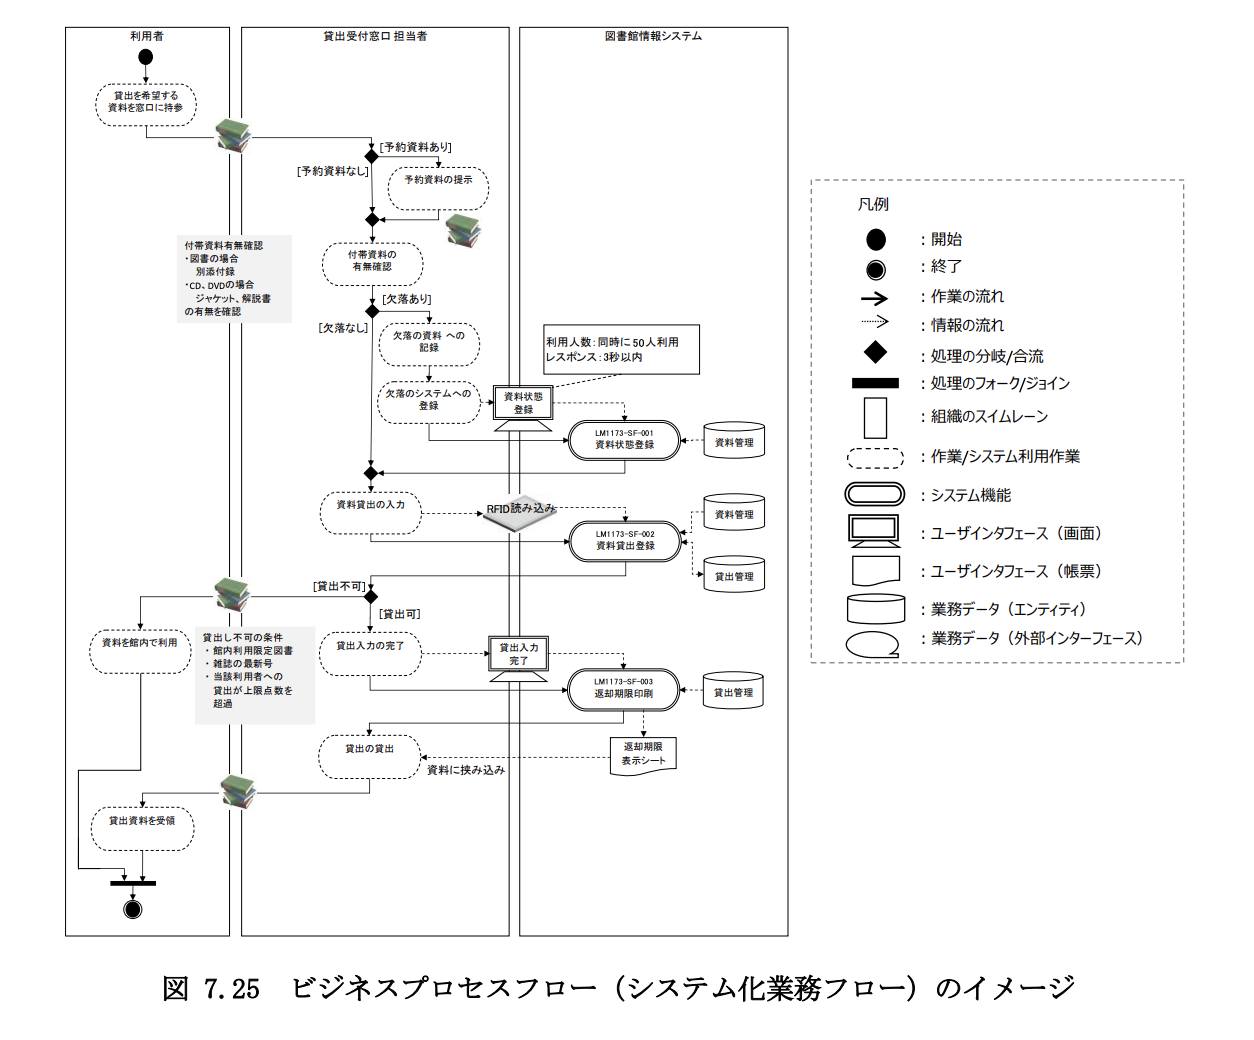 ビジネスプロセスフロー（システム化業務フロー図）の例